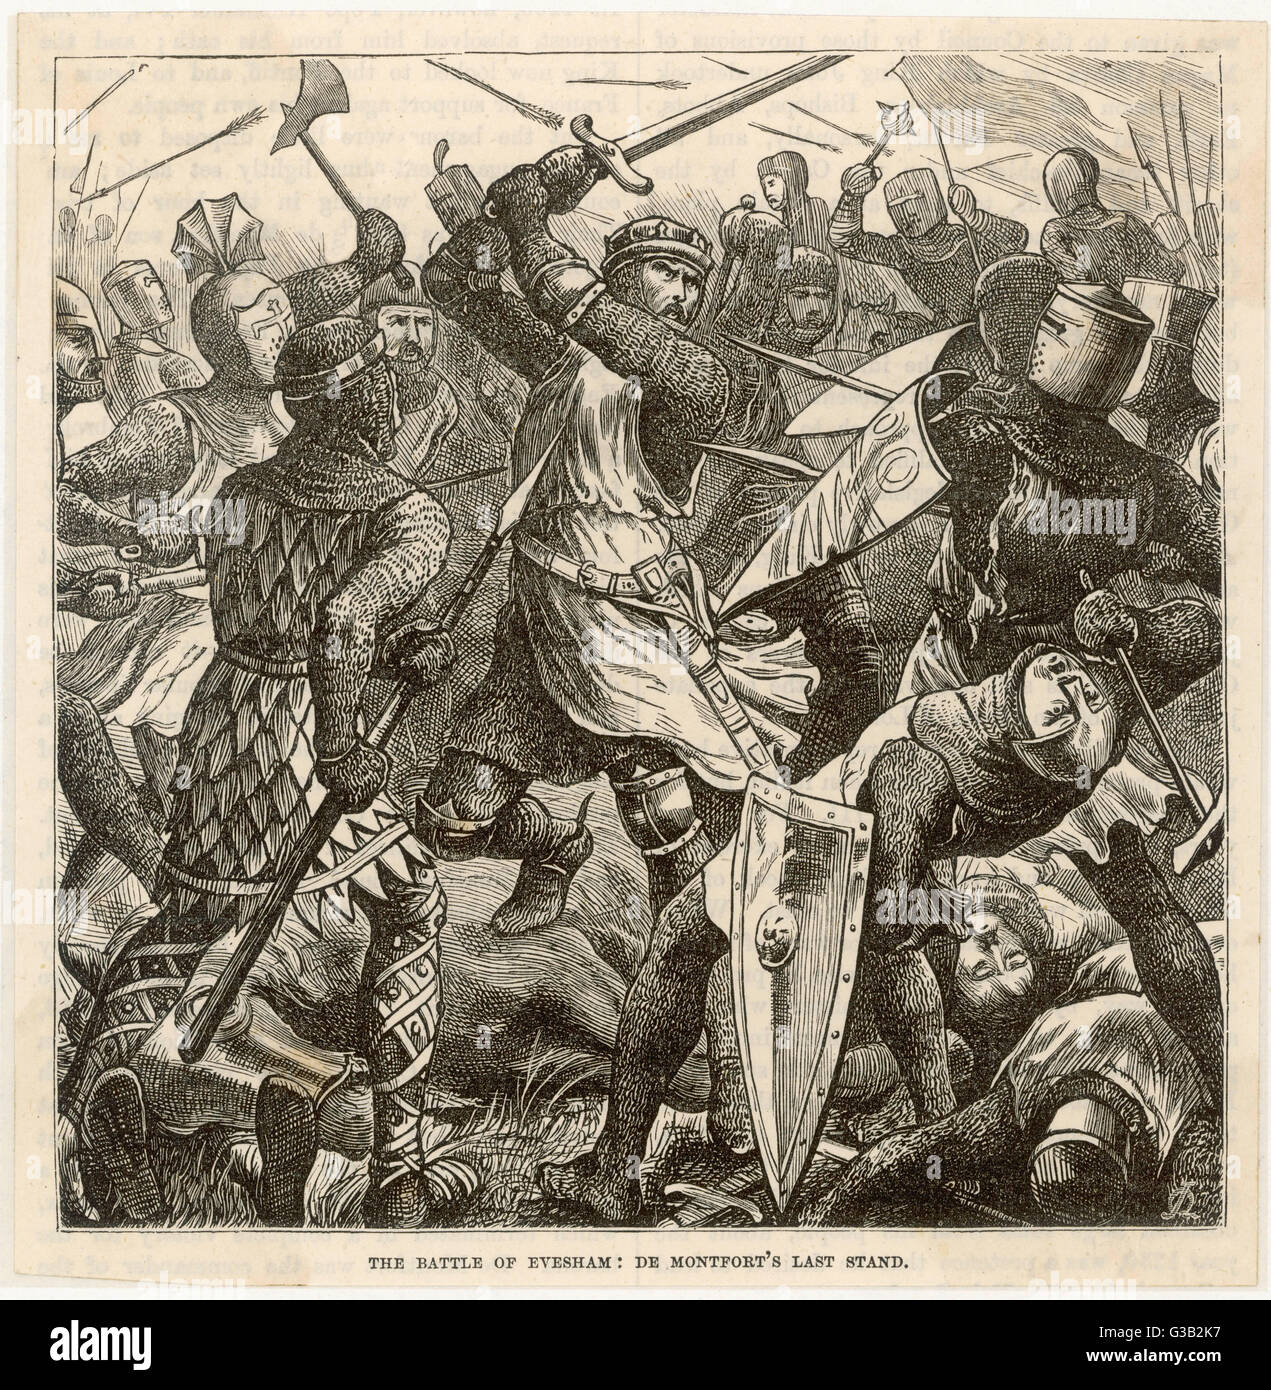 Die Barone Niederlage in der Schlacht von Evesham, in denen Simon de Montfort getötet wird, bringt zu Ende Krieg der Barone und führt zur Wiederherstellung von Henry III Datum: 4 August 1265 Stockfoto